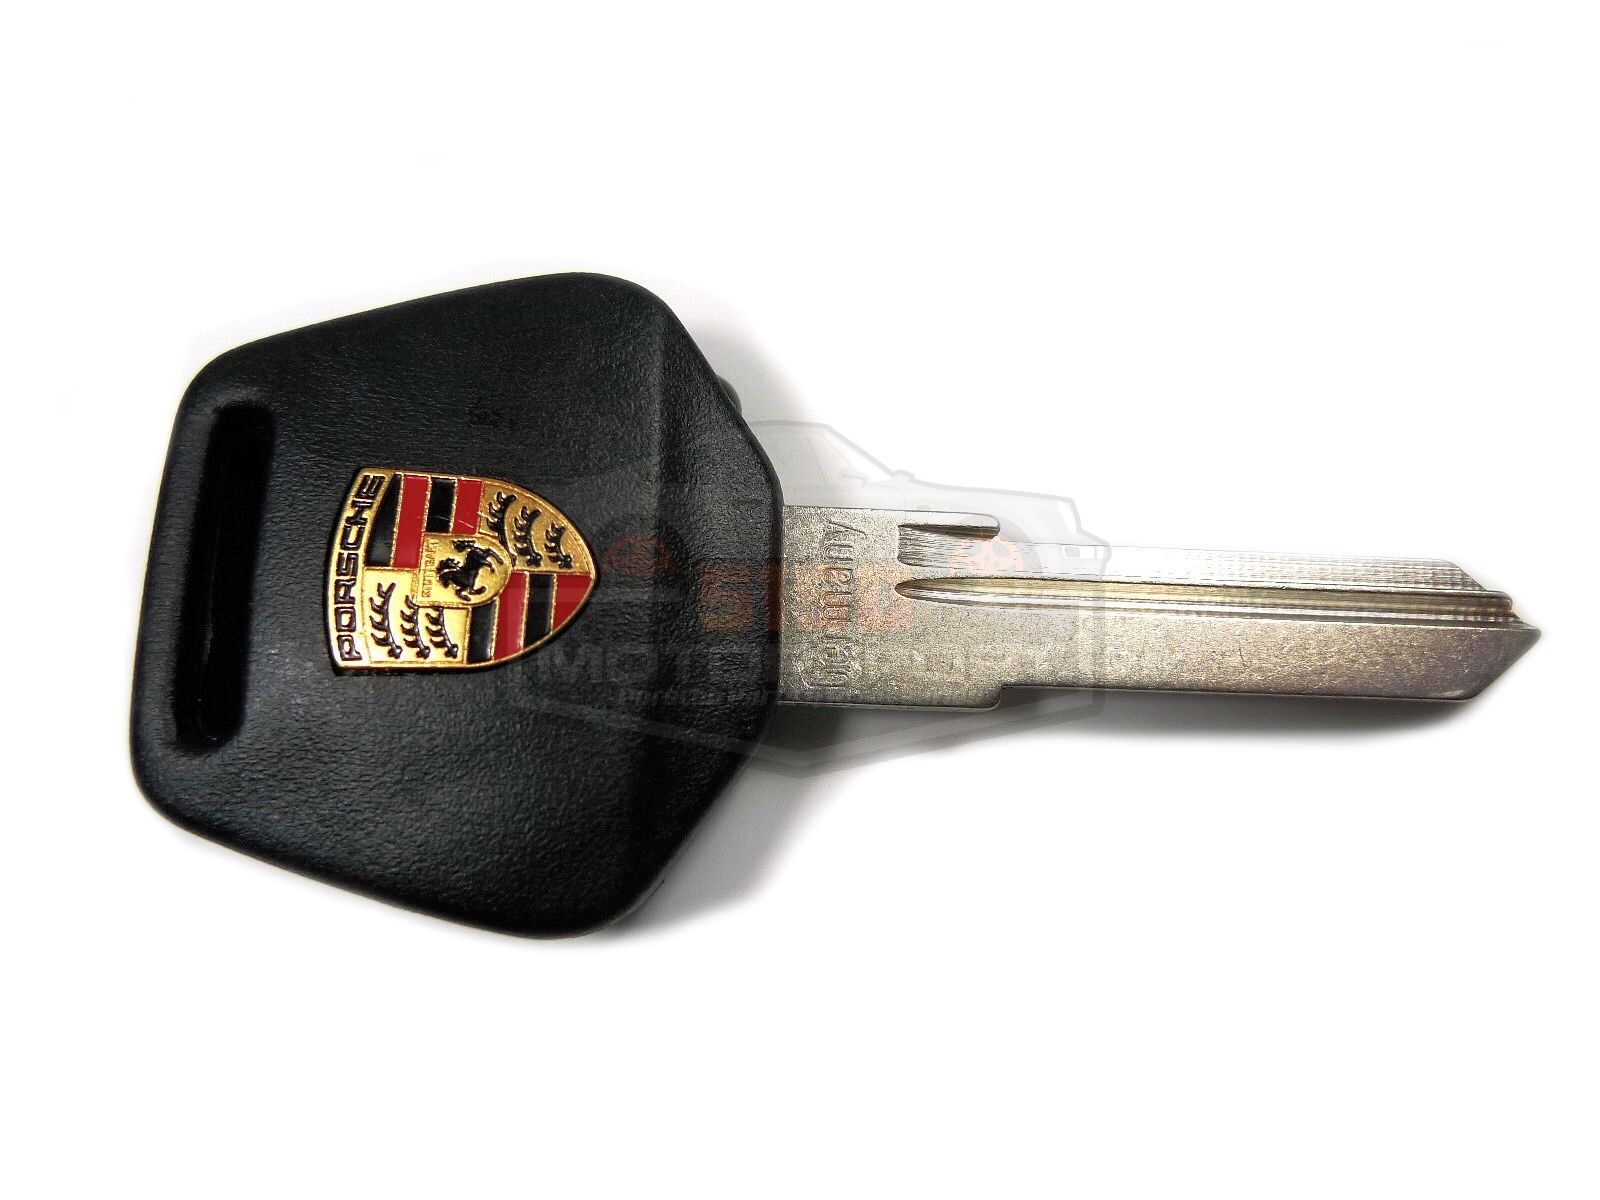 Genuine Porsche 924S 944 968 LED Key Head with Key Blank - 94453833100